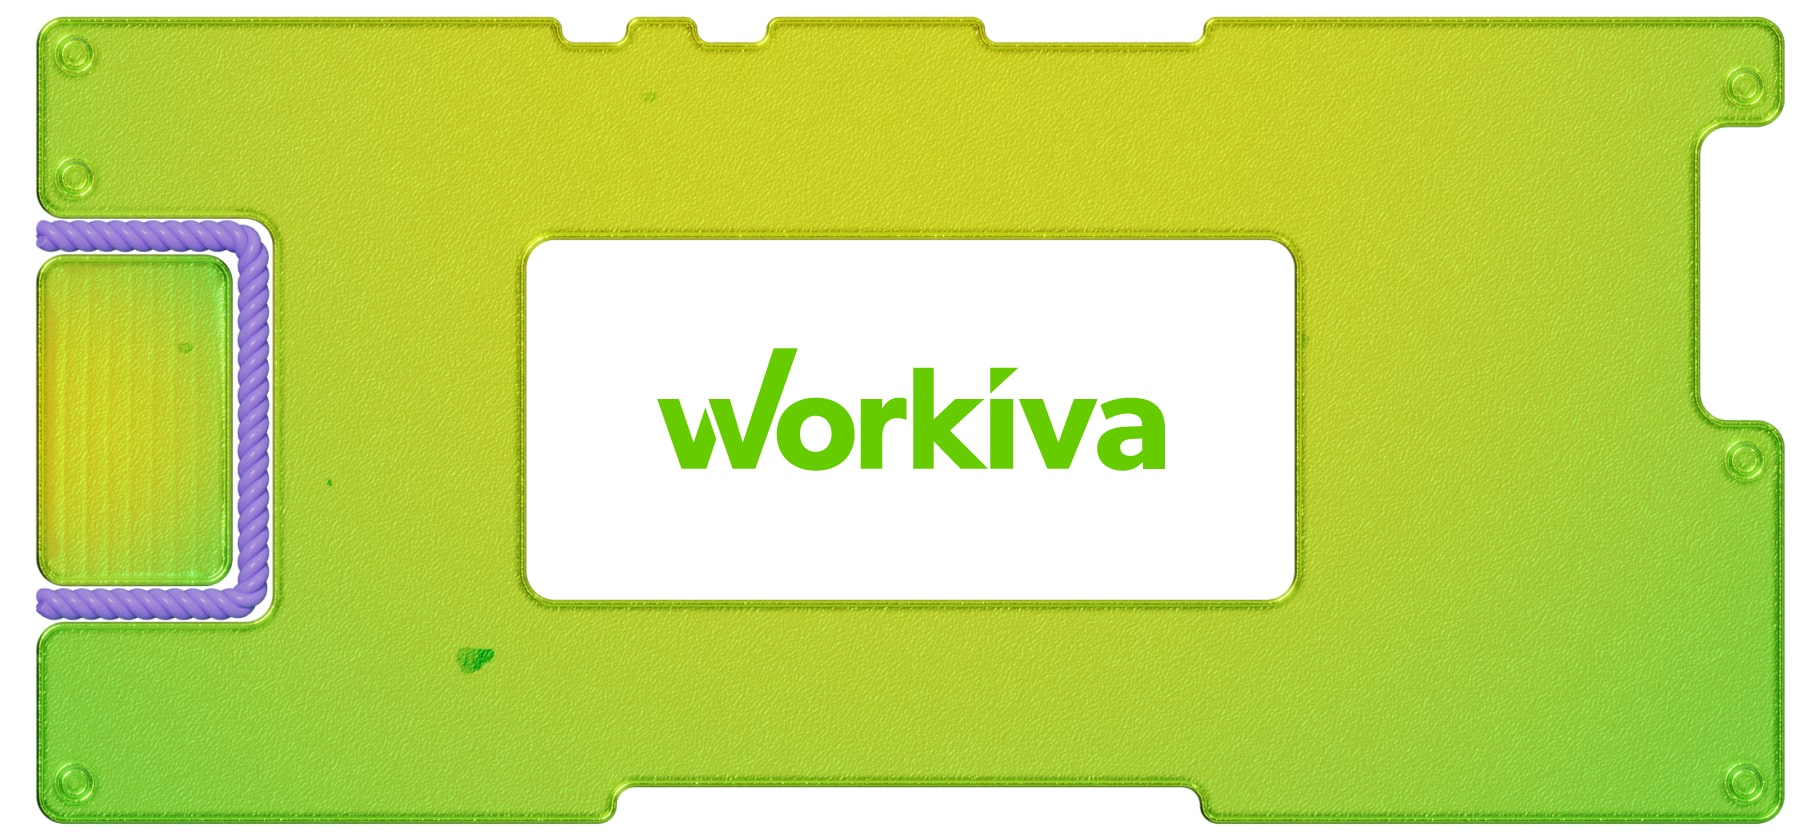 Инвестидея: Workiva, потому что работать